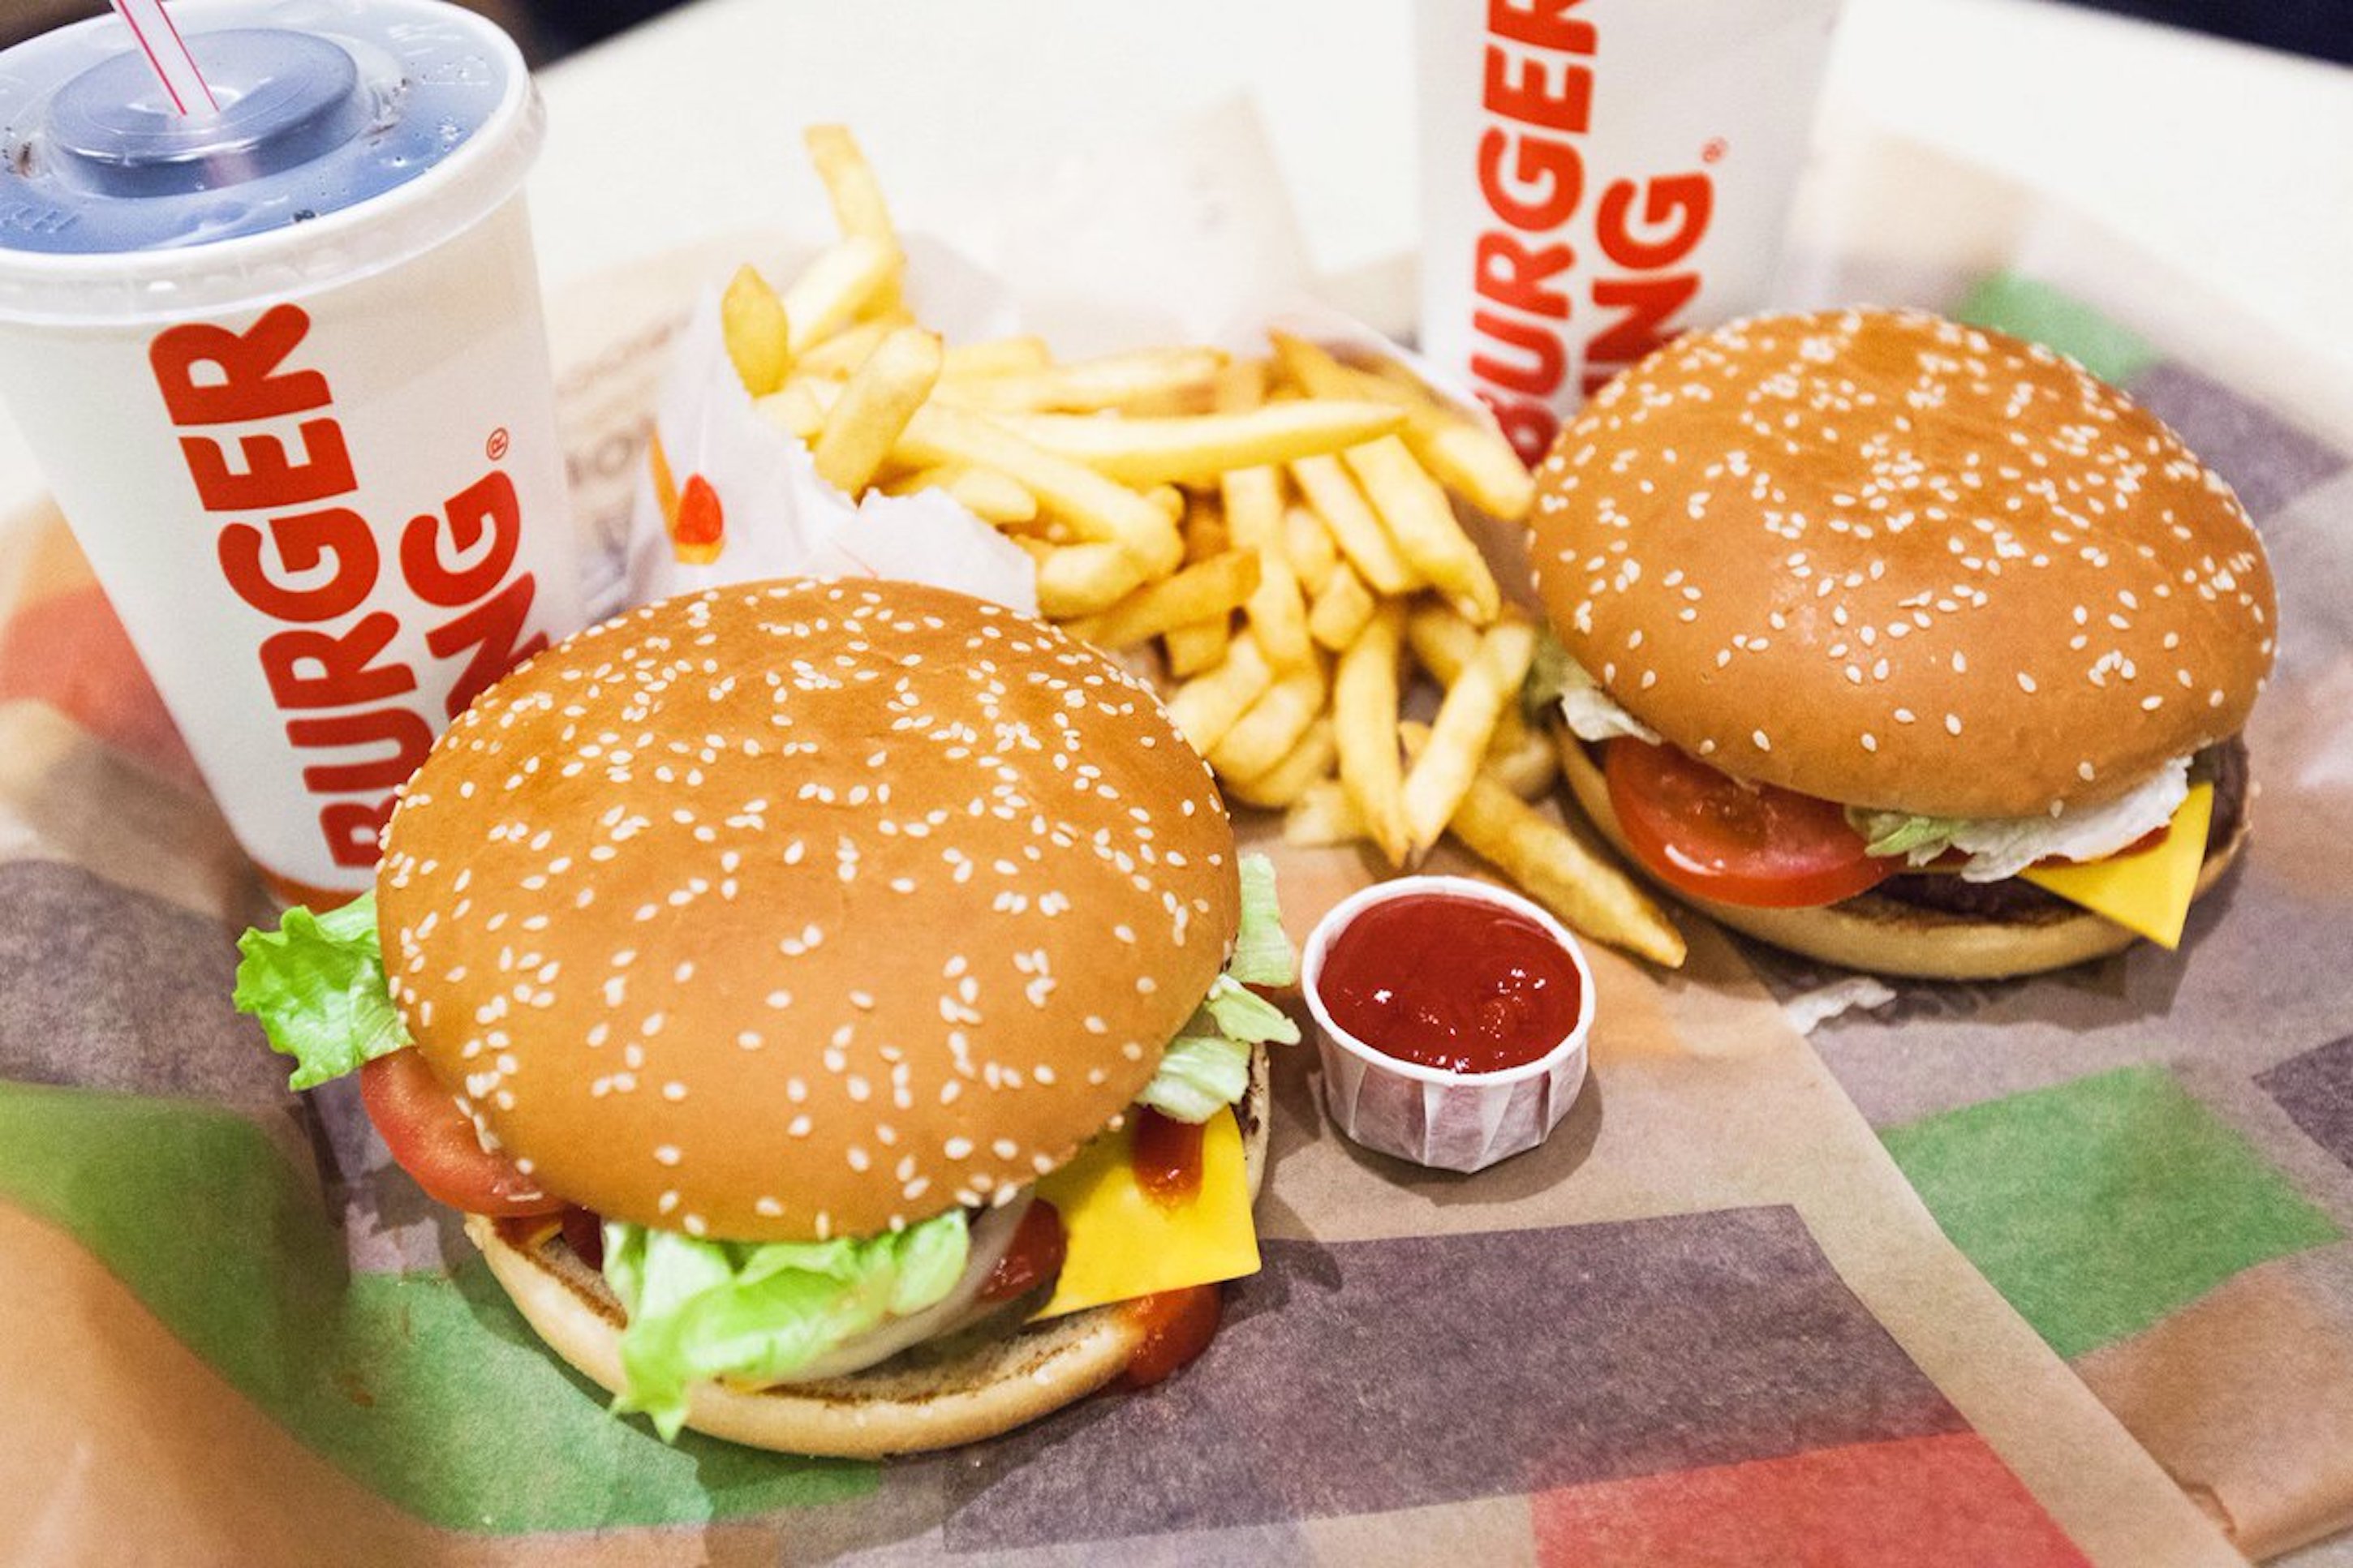 Eita: Acabamos de descobrir como comer de graça no Burger King